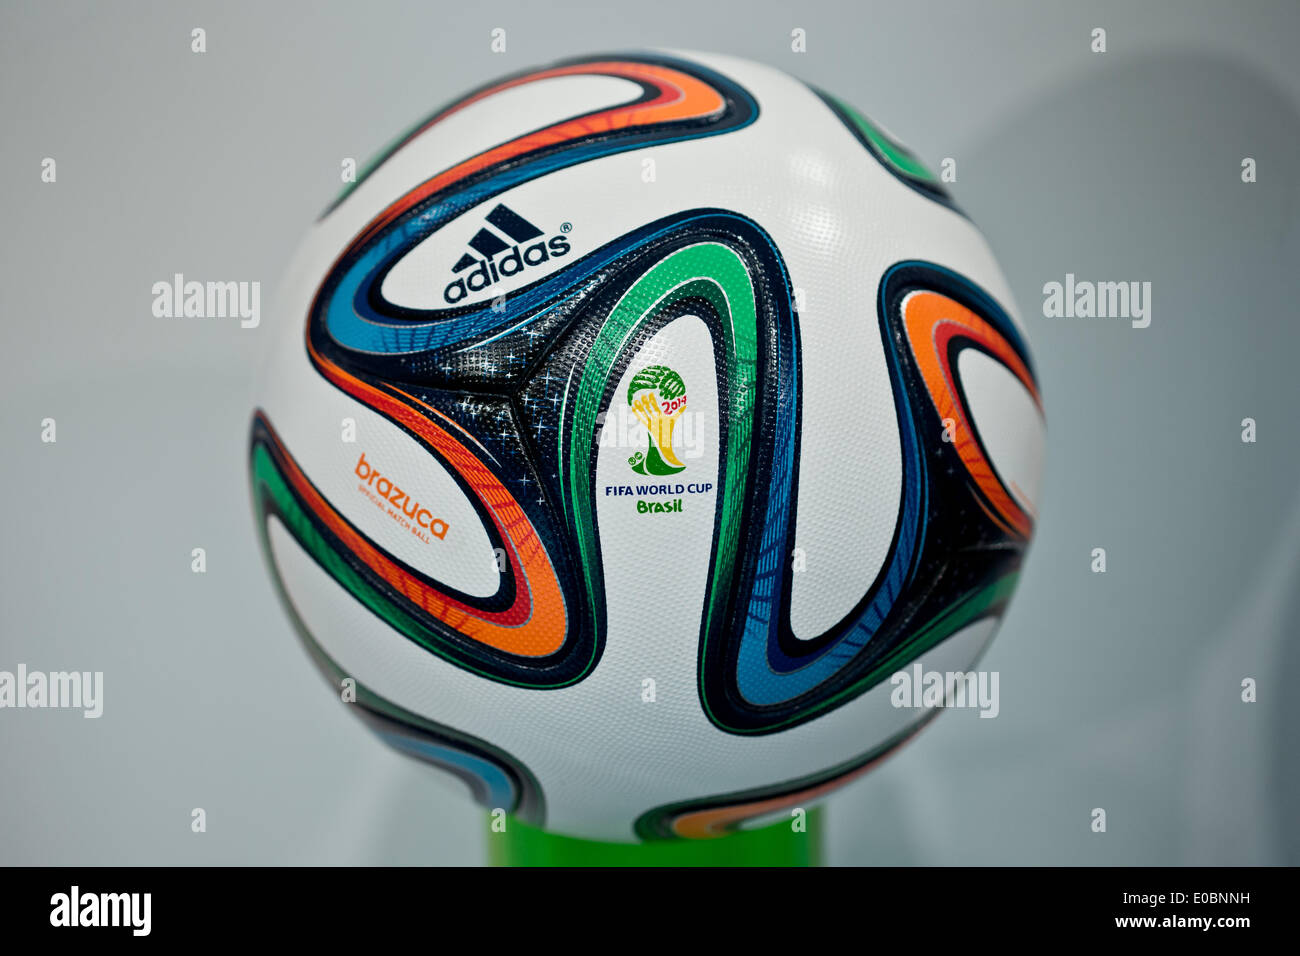 Fürth, Alemania. 08 de mayo de 2014. "Brazuca" balón fútbol que será el balón oficial de la copa de fútbol de 2014 en Brasil se muestra durante la reunión general